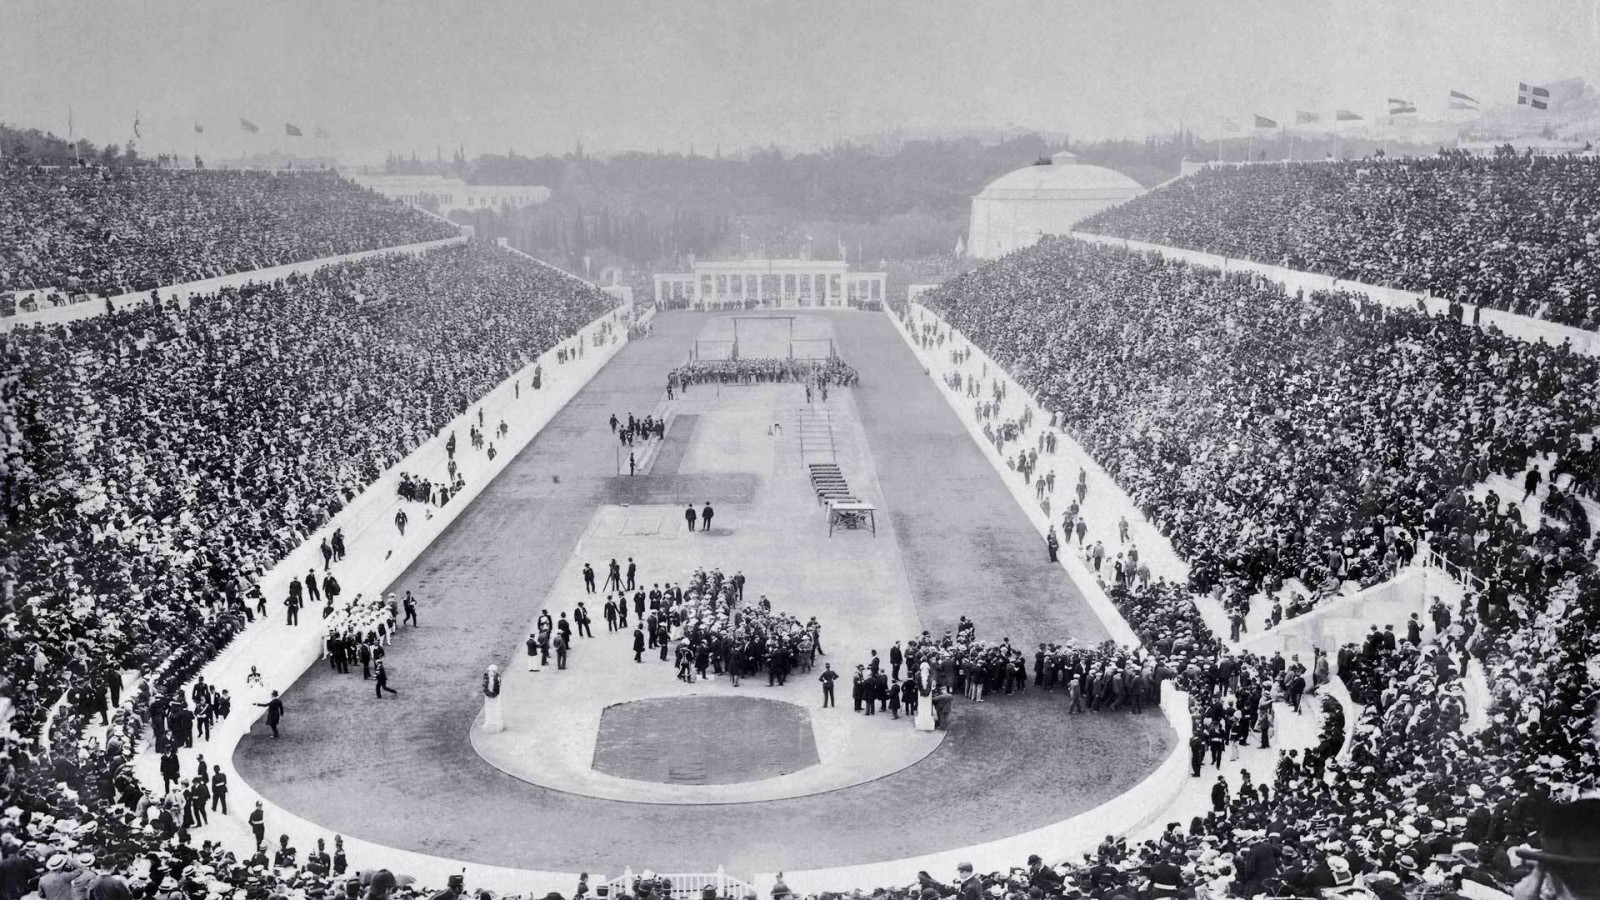 สนามกีฬา, กรีซ, การเปิด, 1896, เอเธนส์, การแข่งขันกีฬาโอลิมปิก